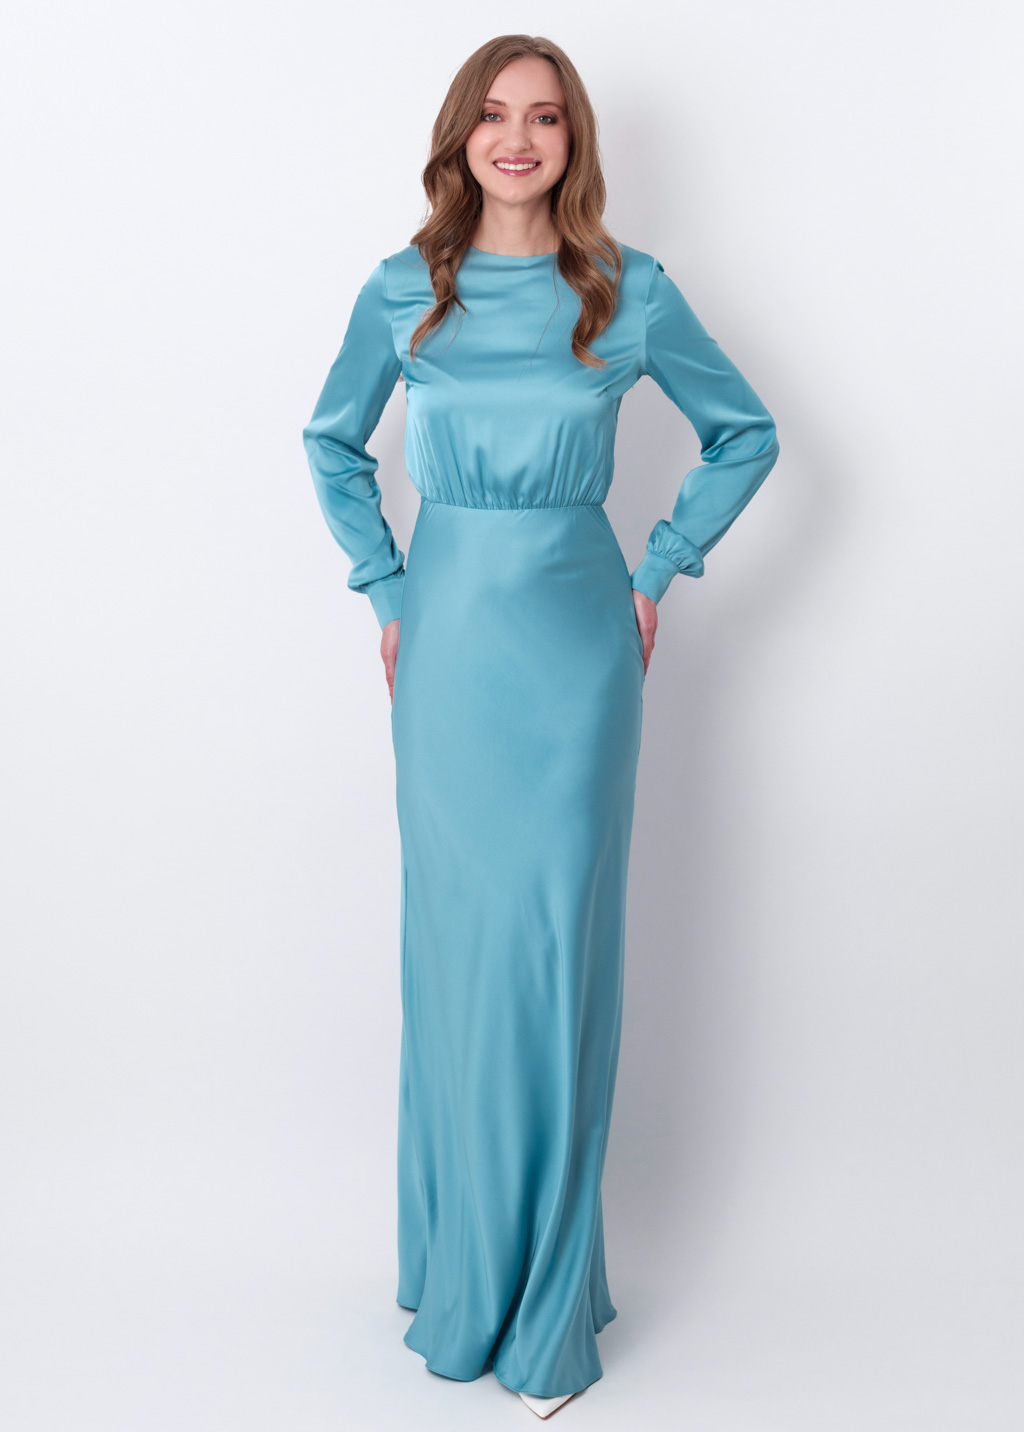 Dusty blue silk long dress